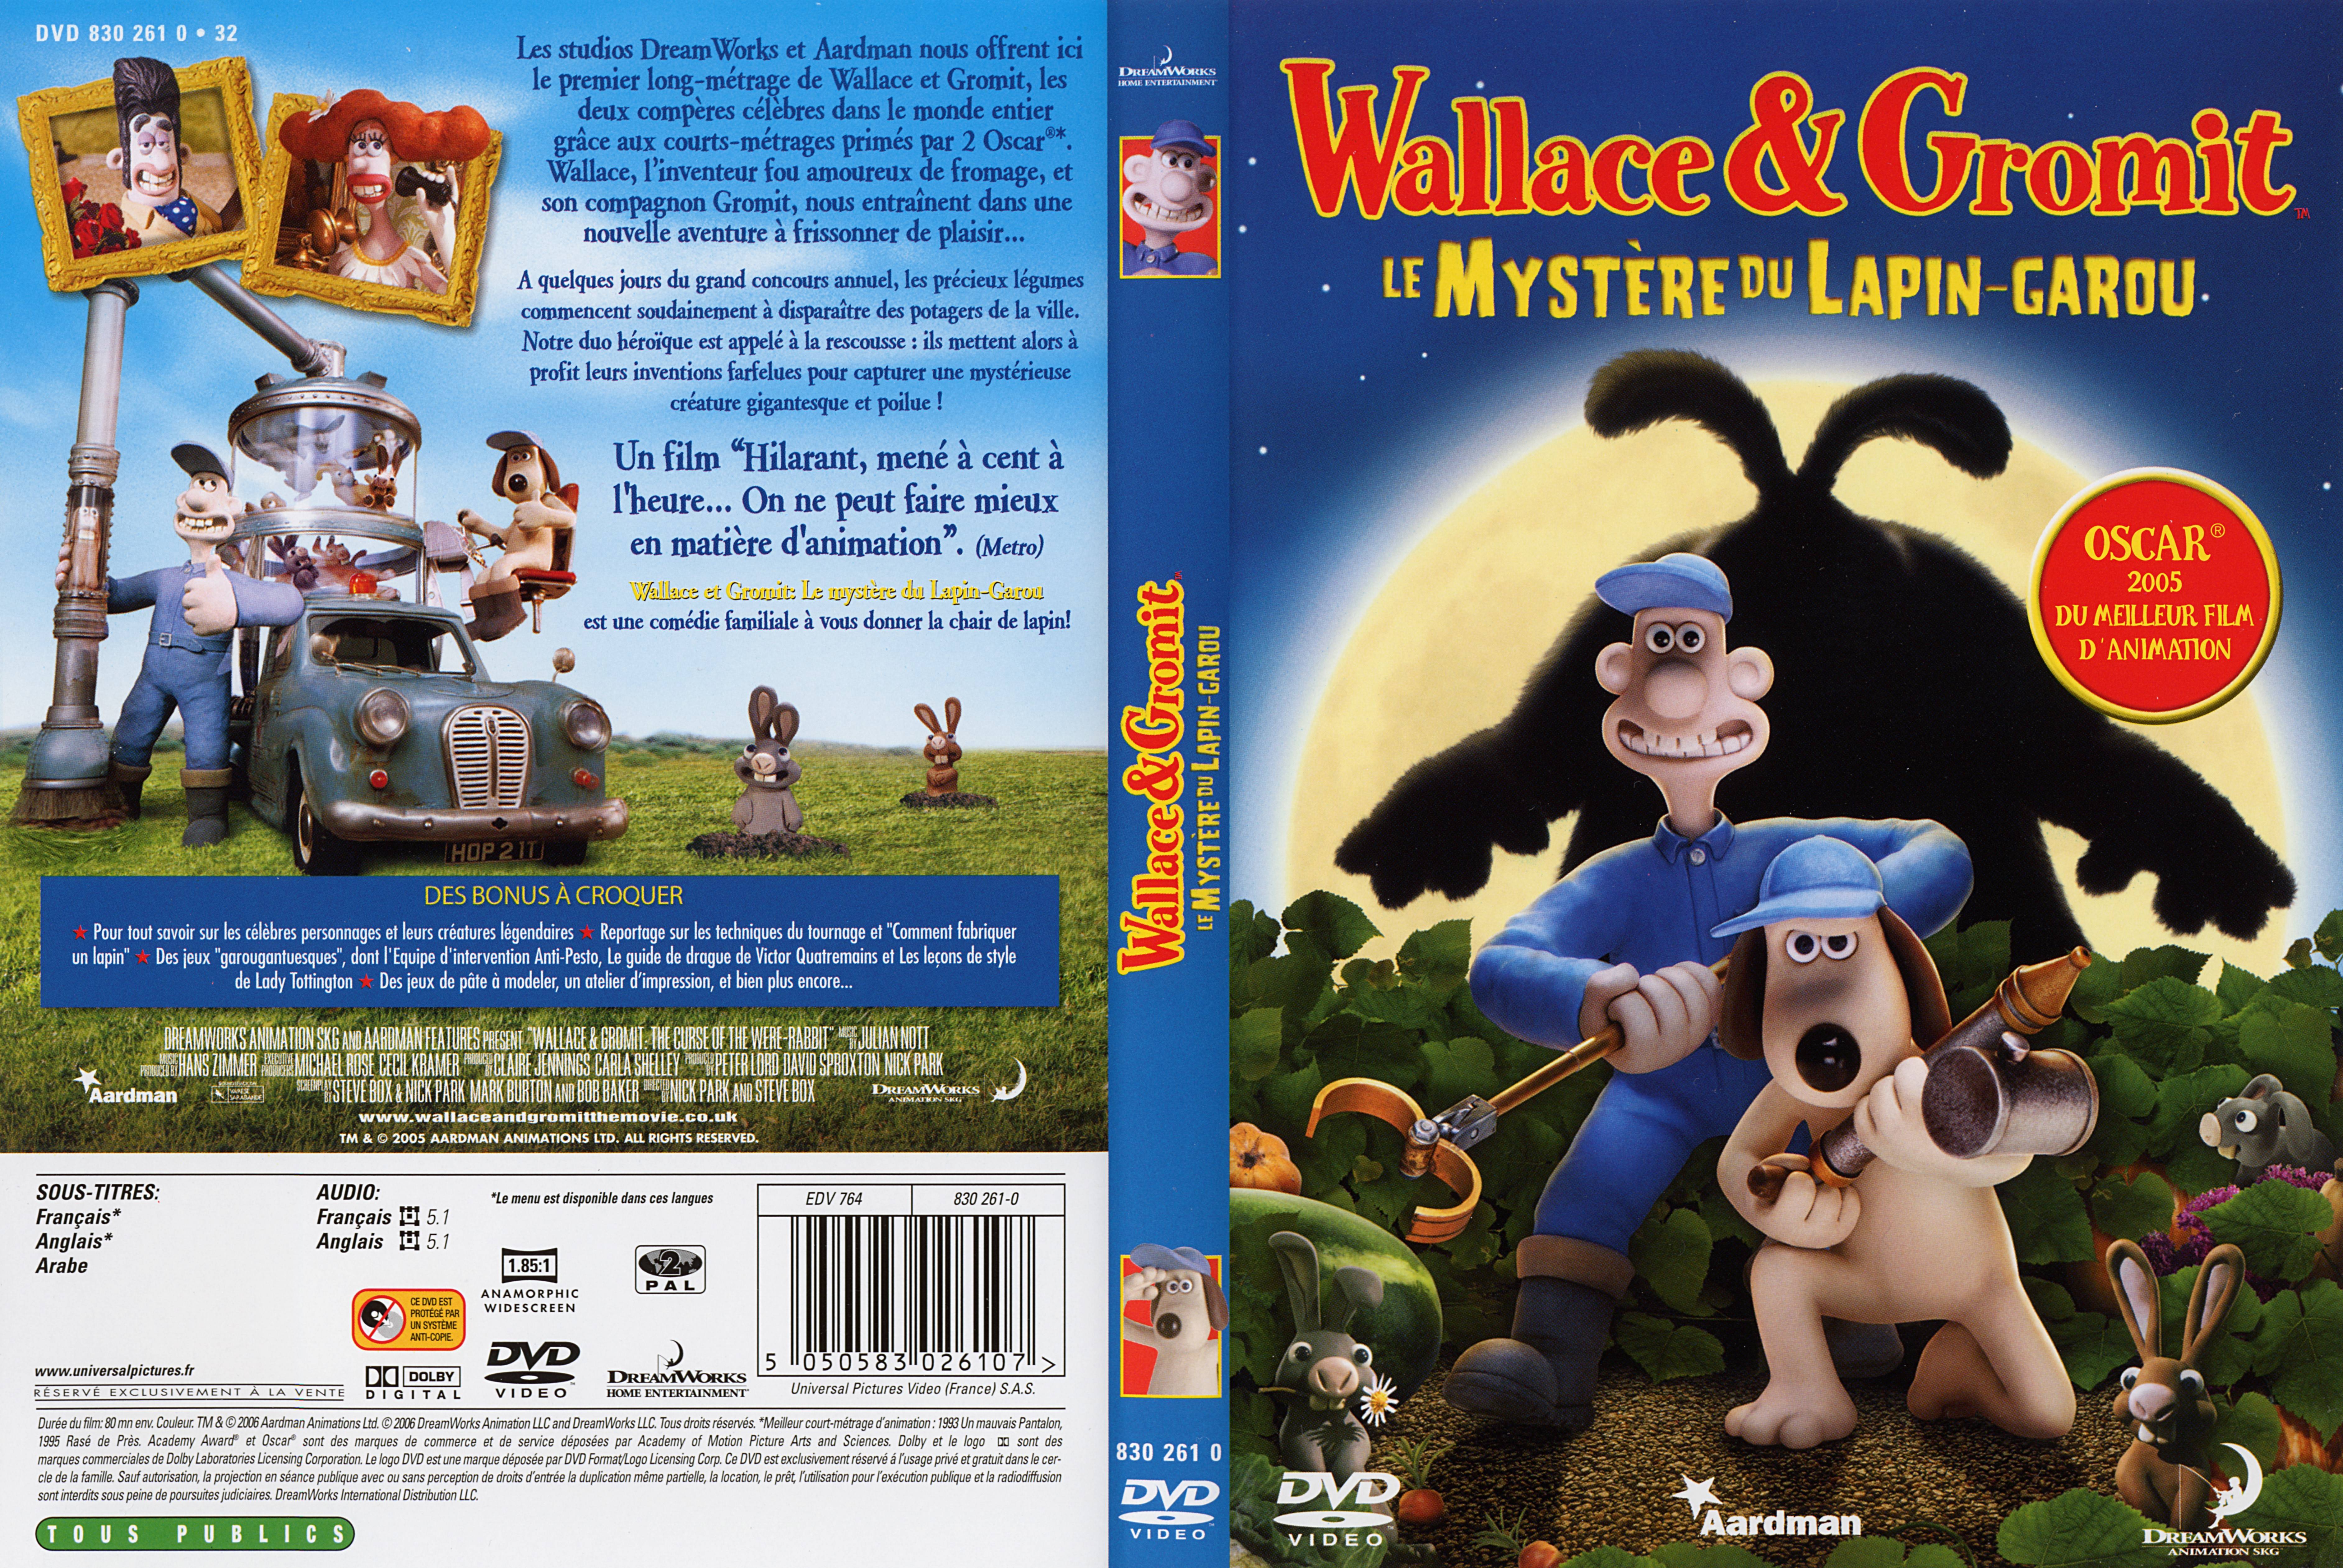 Jaquette DVD Wallace et Gromit Le mystere du lapin garou